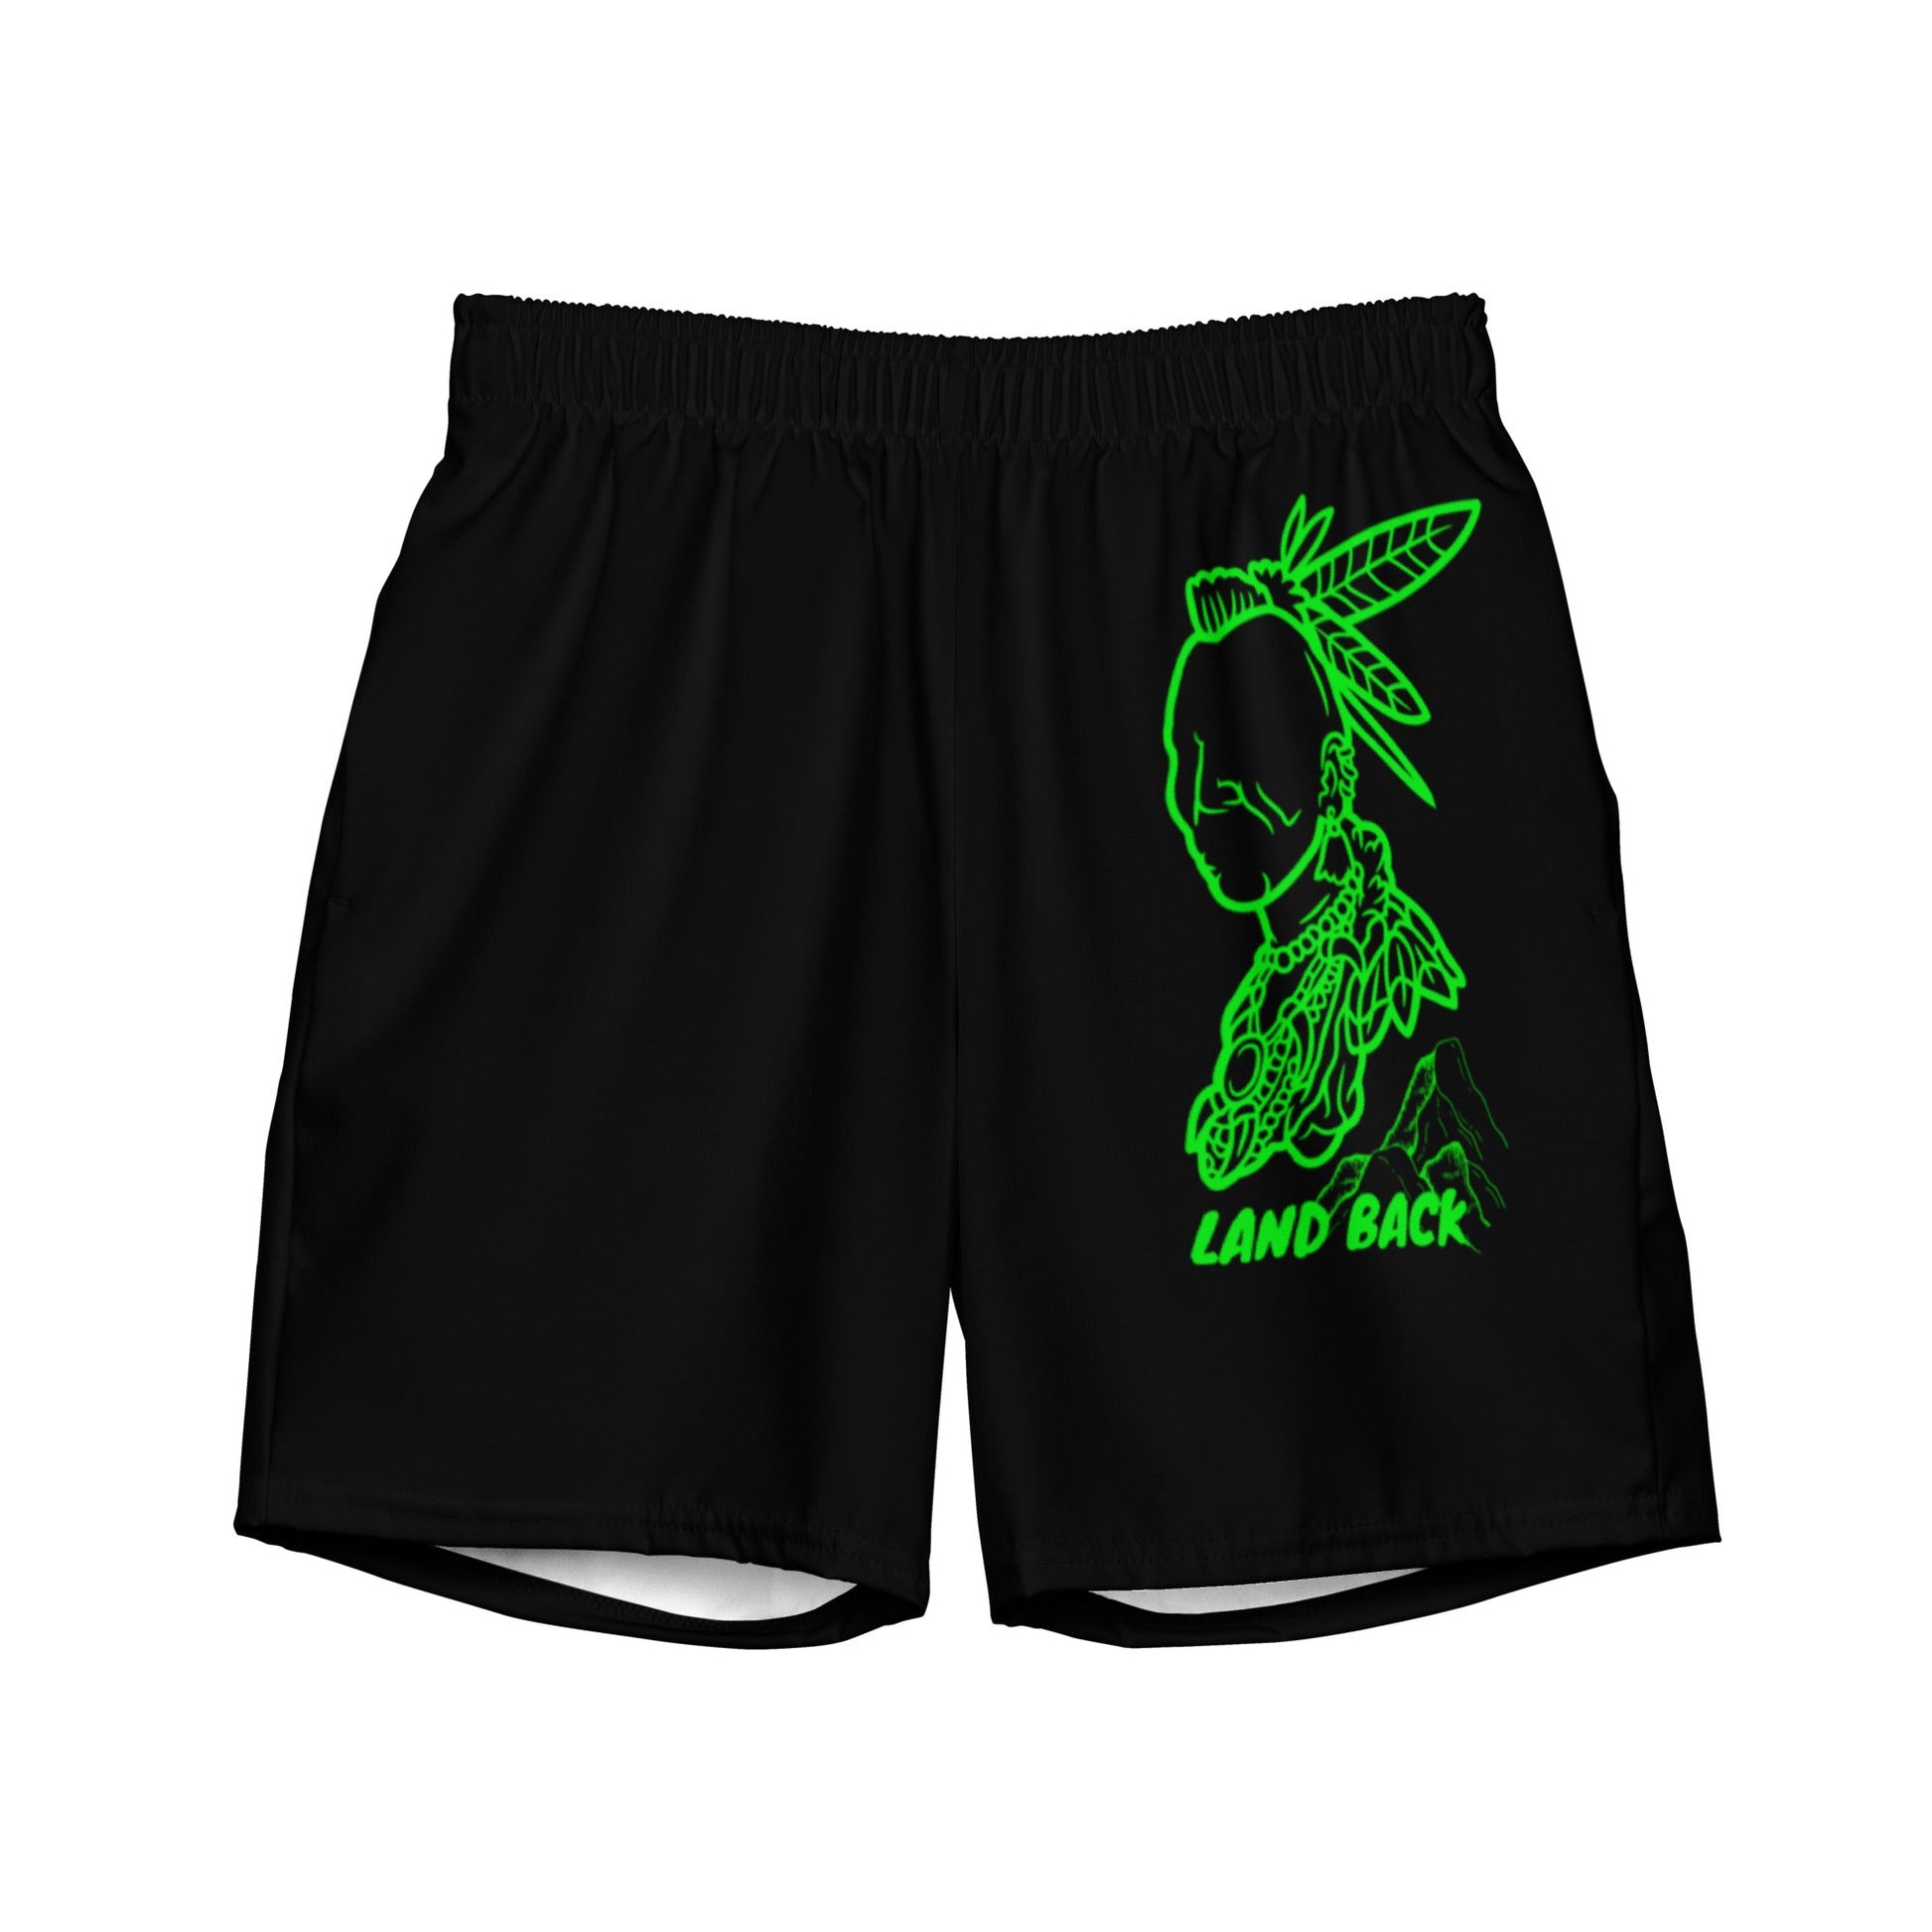 Men's Land Back swim trunks - Nikikw Designs